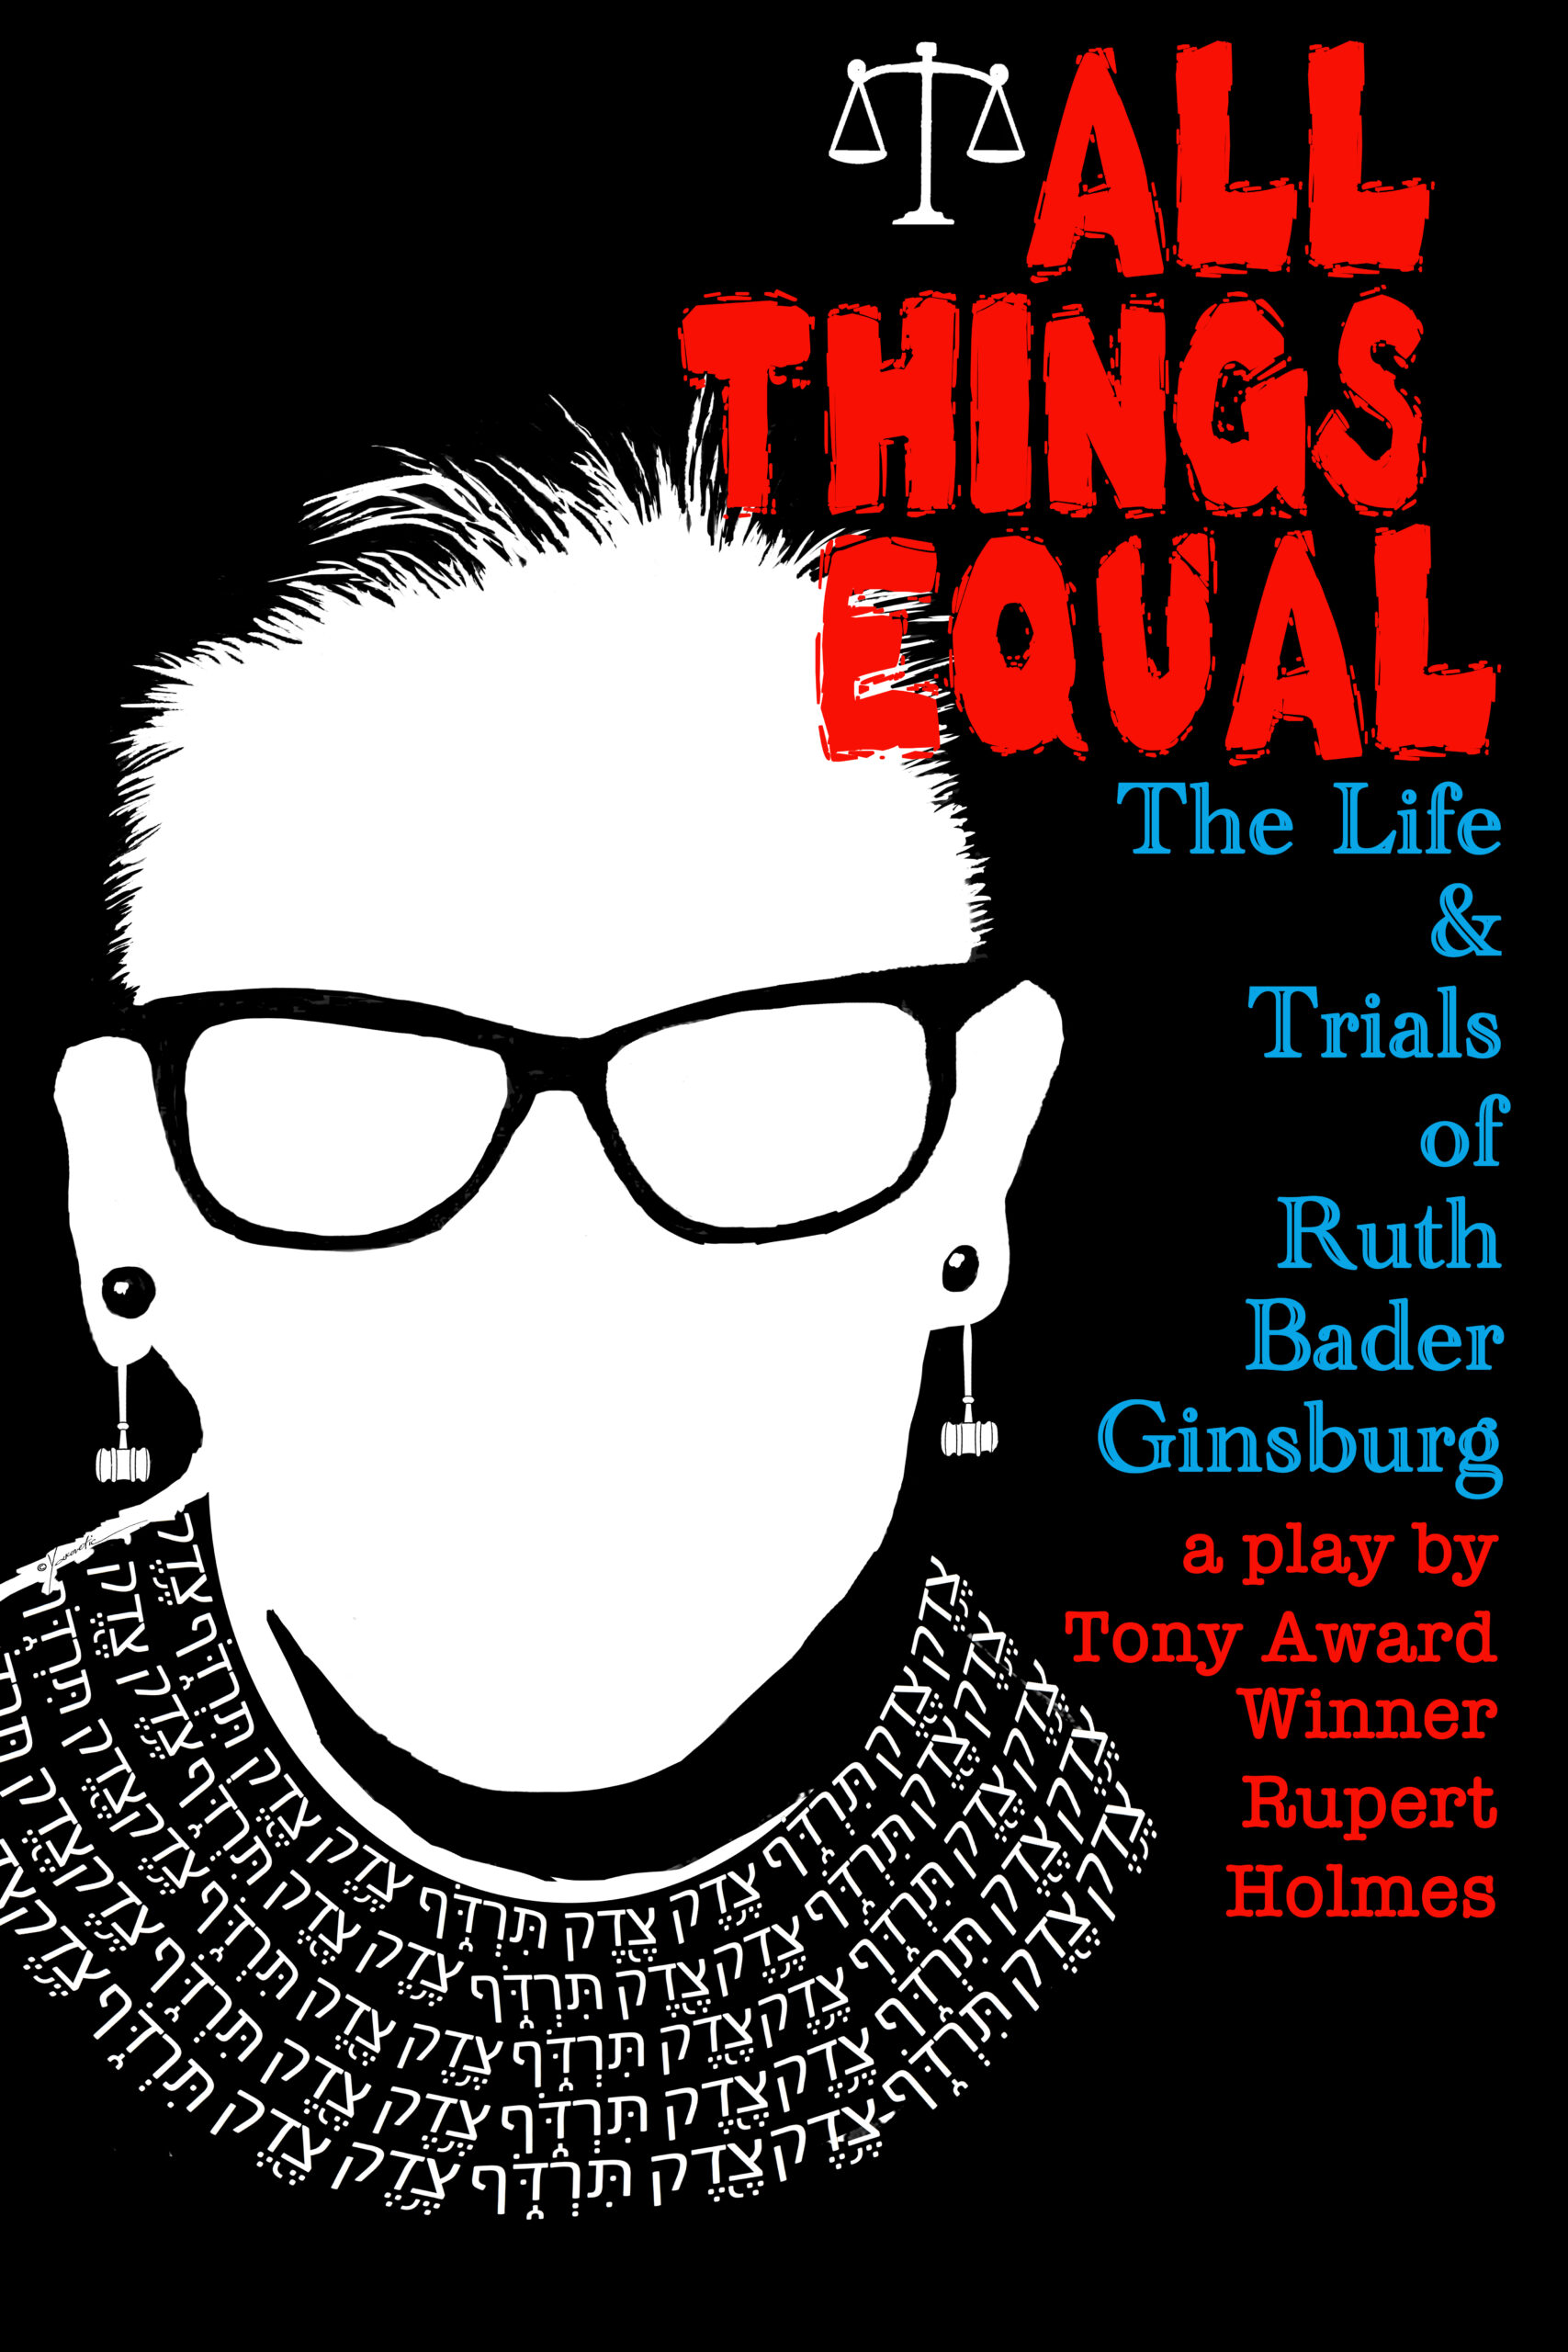 “All Things Equal: The Life & Trials of Ruth Bader Ginsburg” by Tony Award-winning playwright Rupert Holmes runs November 3 to November 27 at Bay Street Theater.